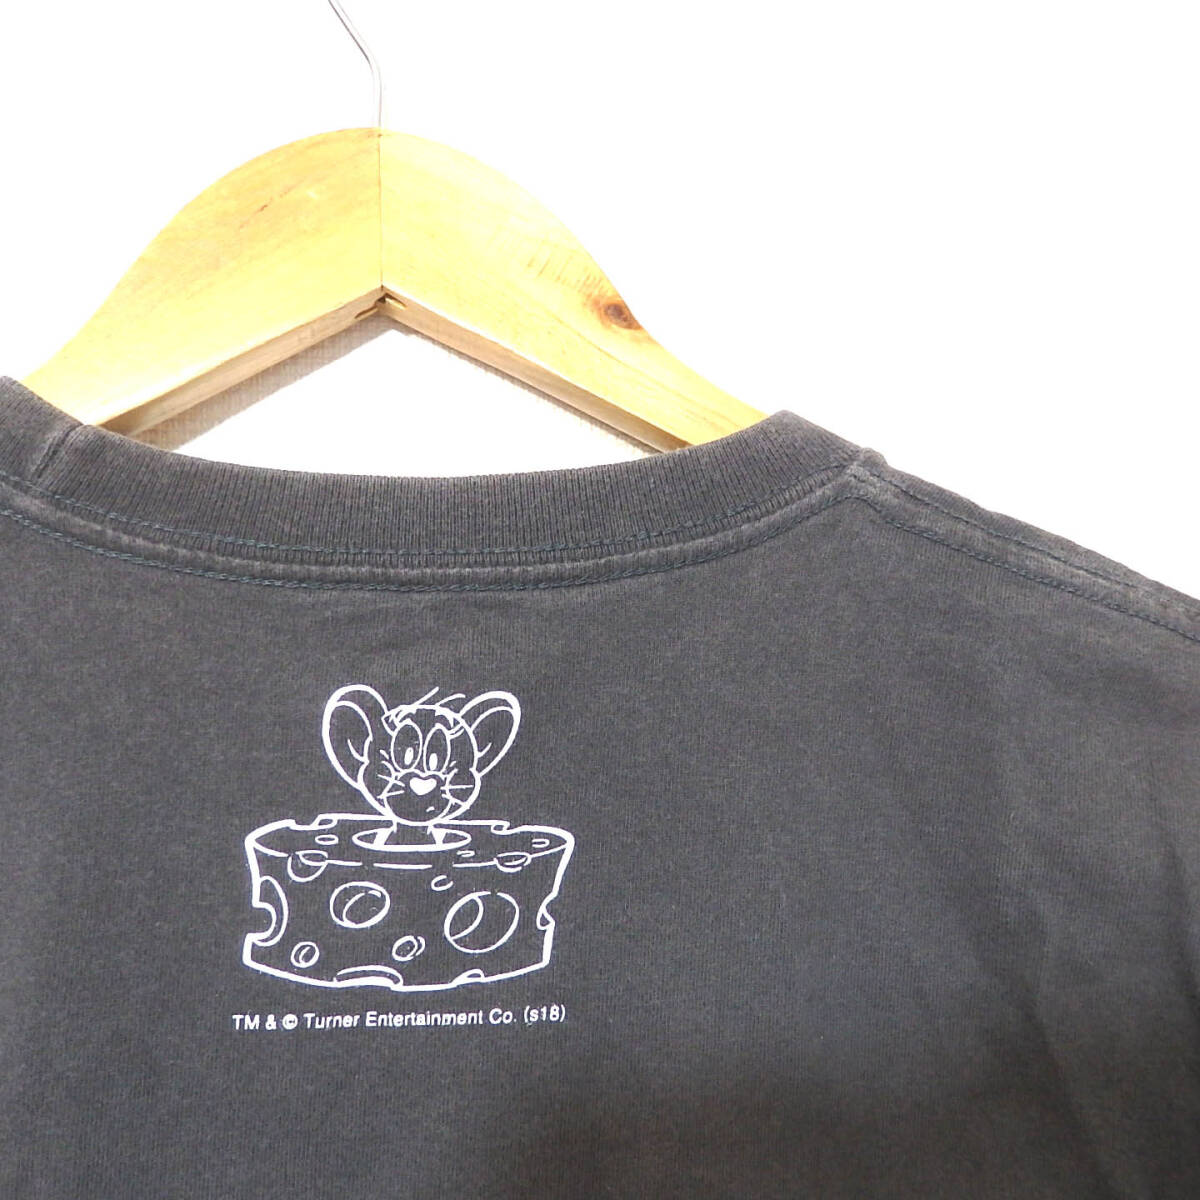 【送料無料】グラニフ×トムとジェリーTシャツ/Sサイズ（小さめ）Design Tshirts Store graniph